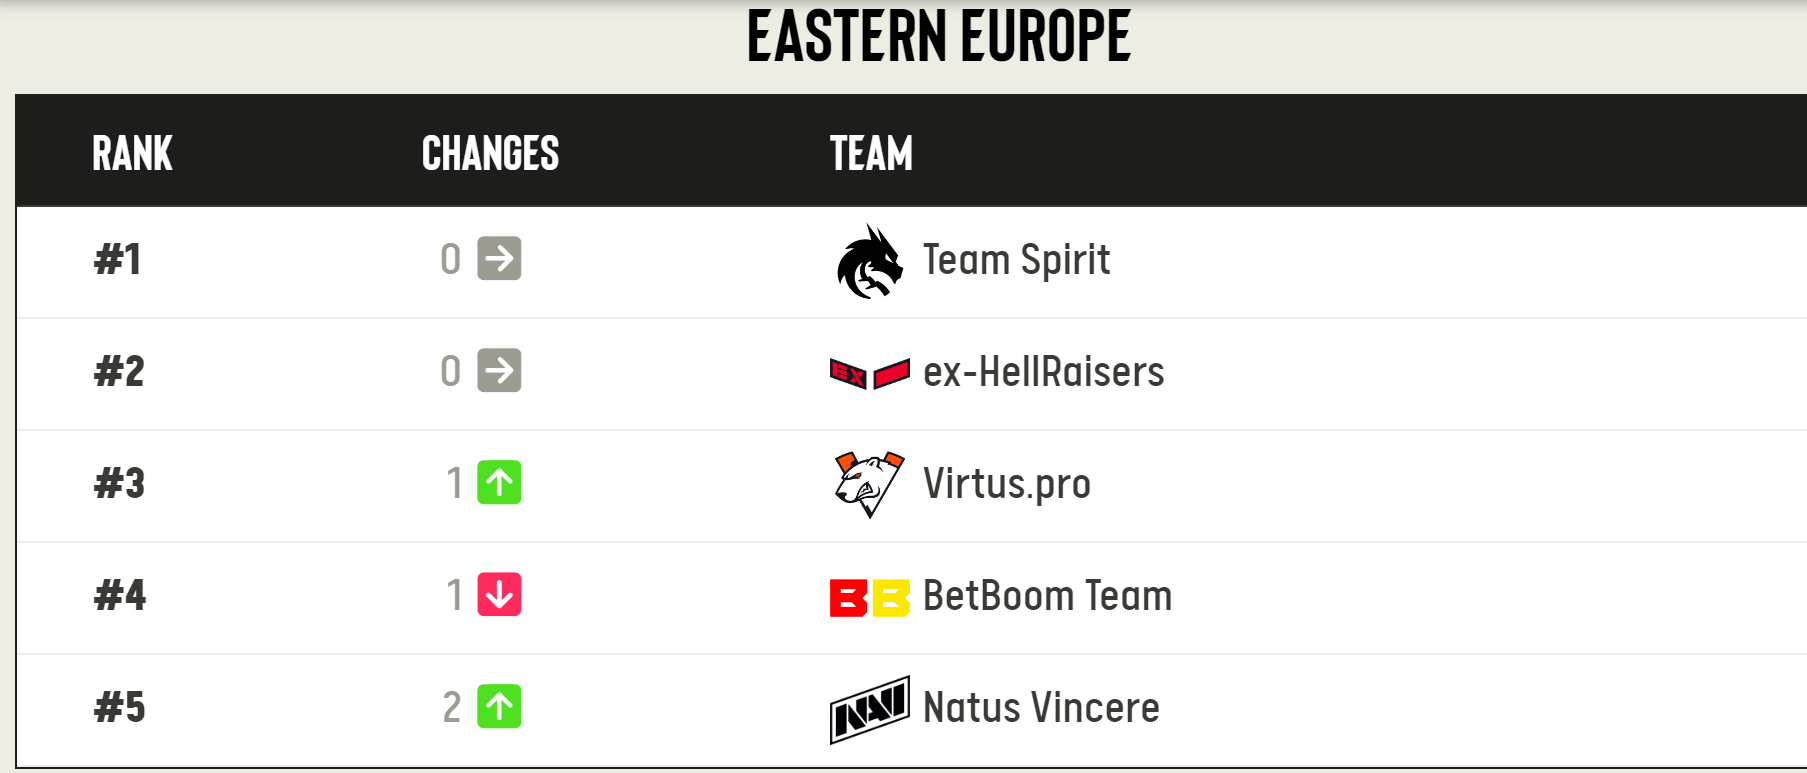 Рейтинг команд от ESL в Восточной Европе